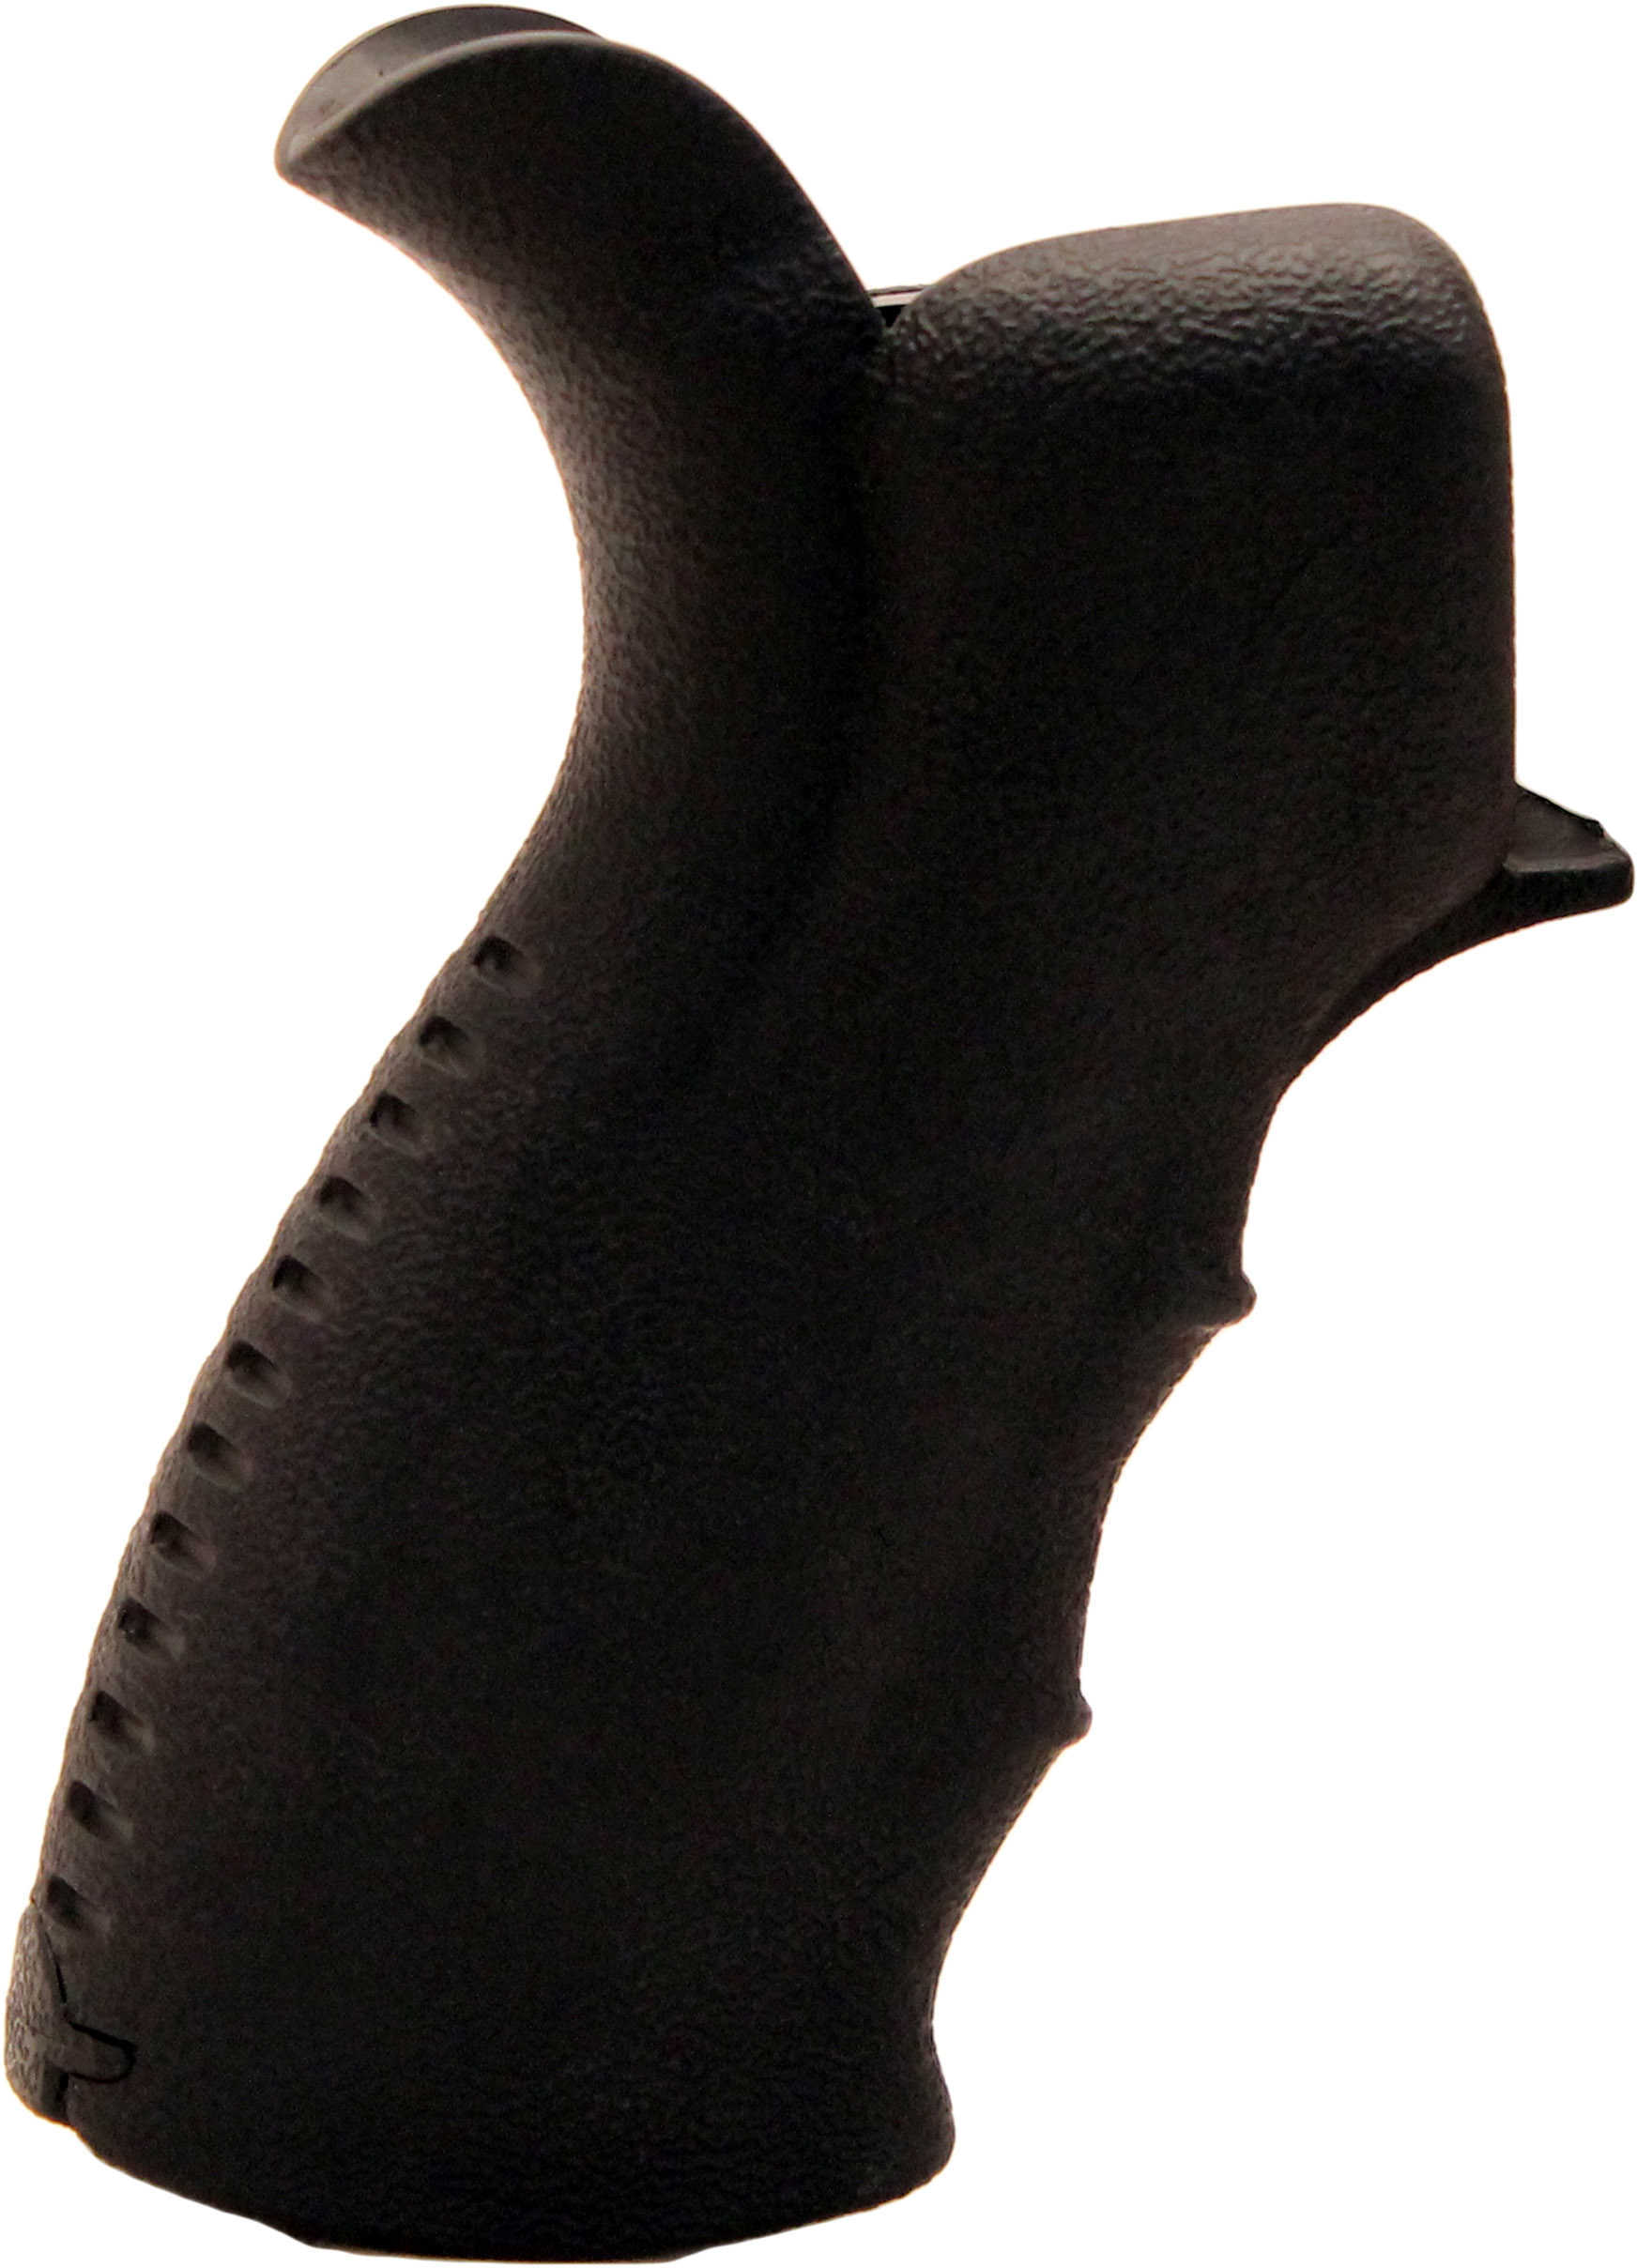 UTG Rb-TPG269B AR15 Pistol Grip Textured Polymer